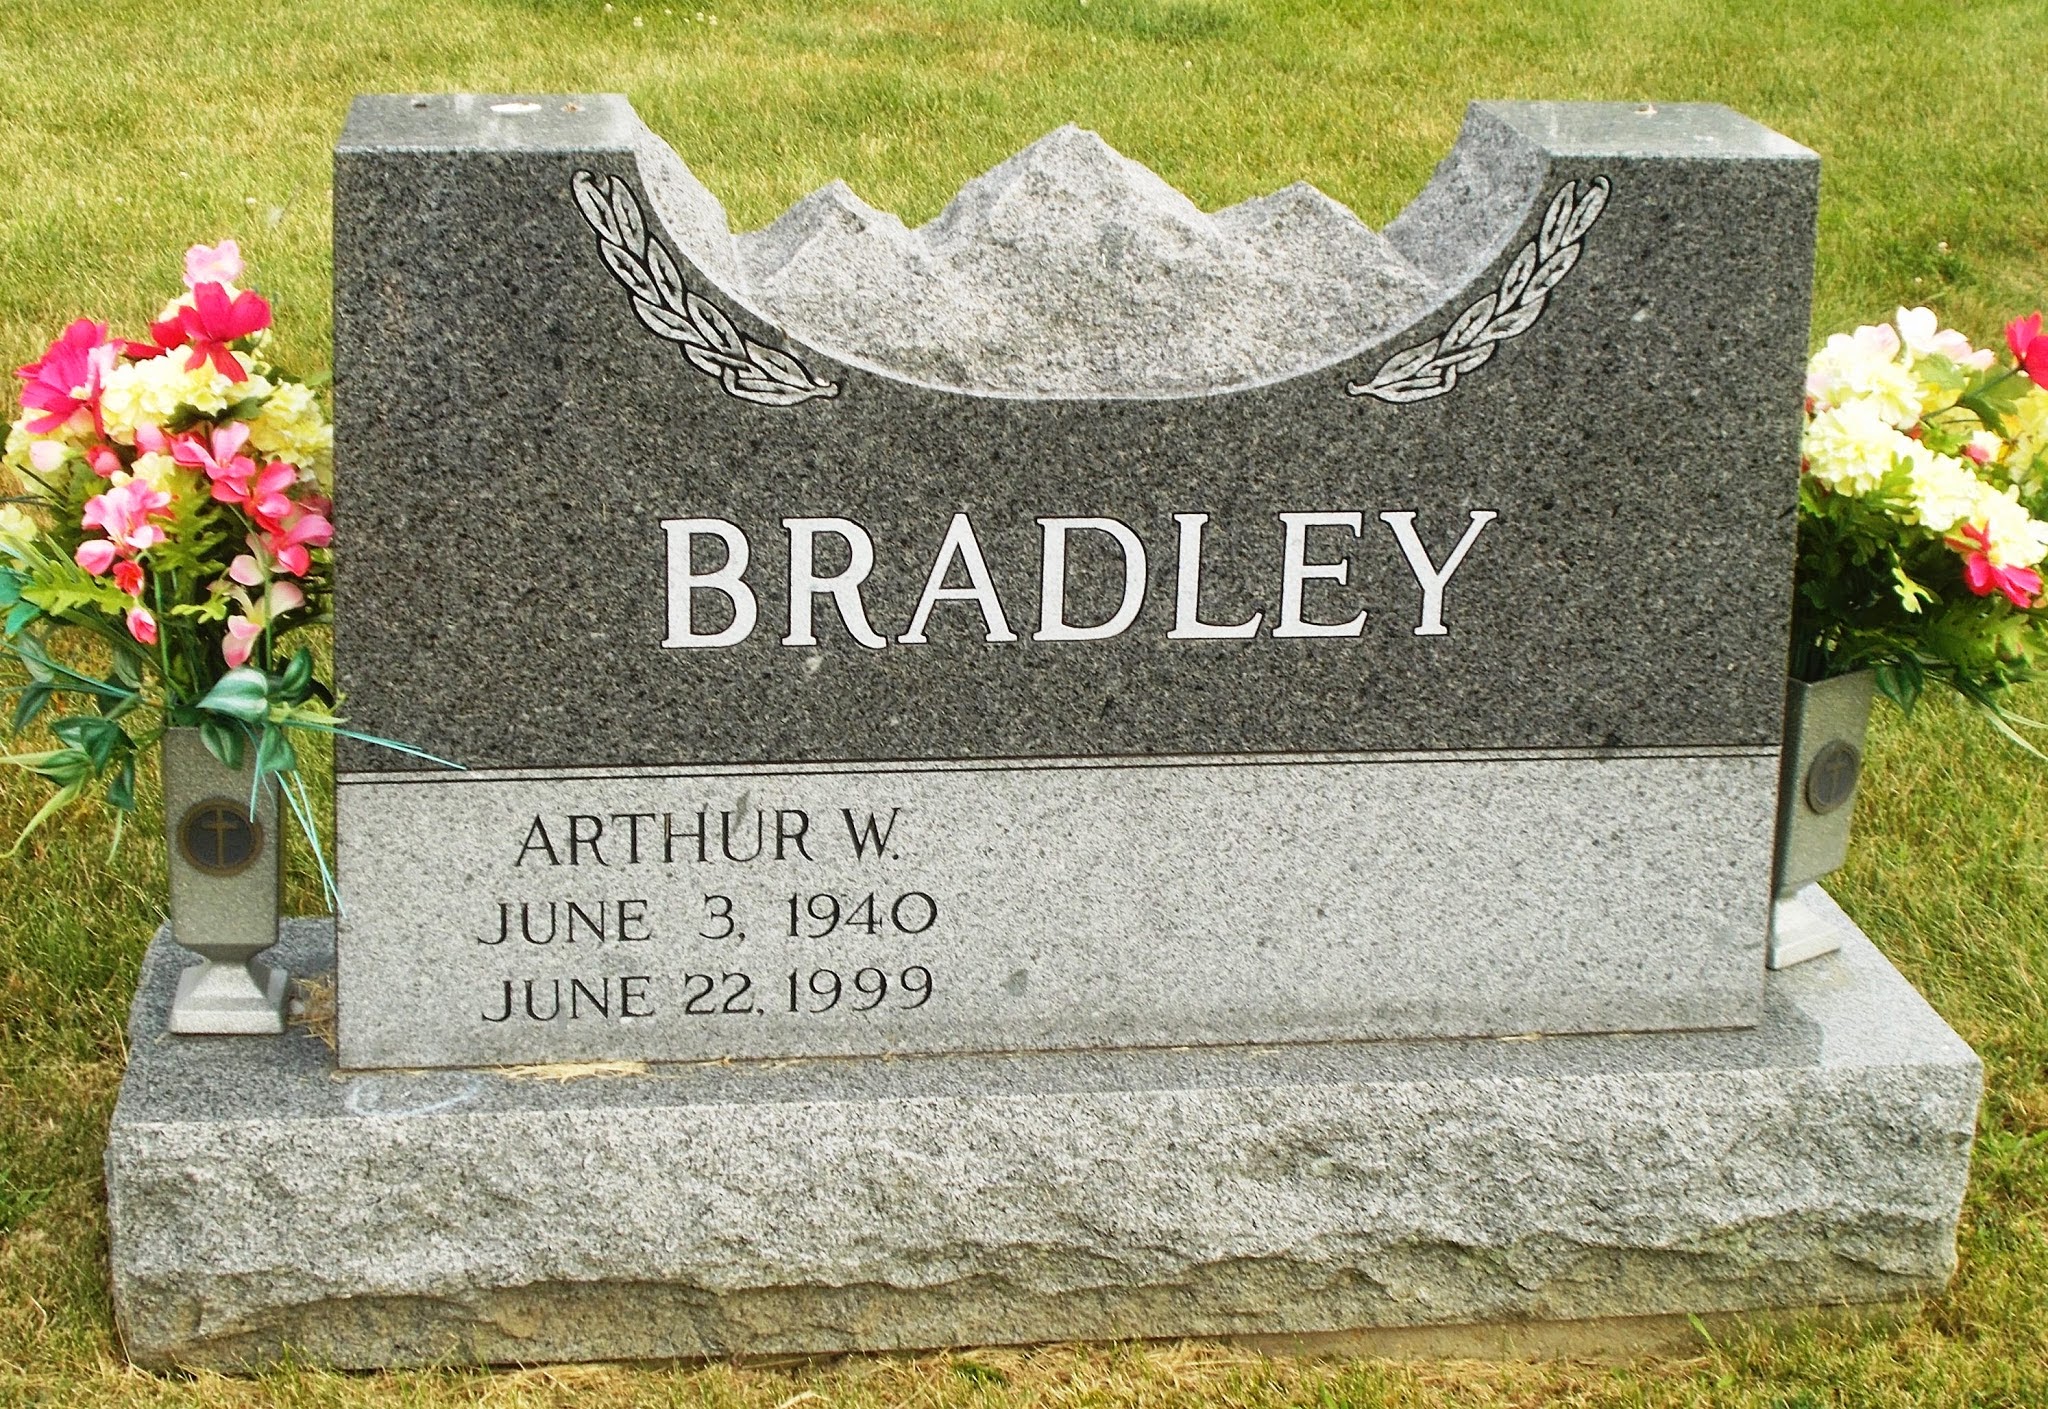 Arthur W Bradley